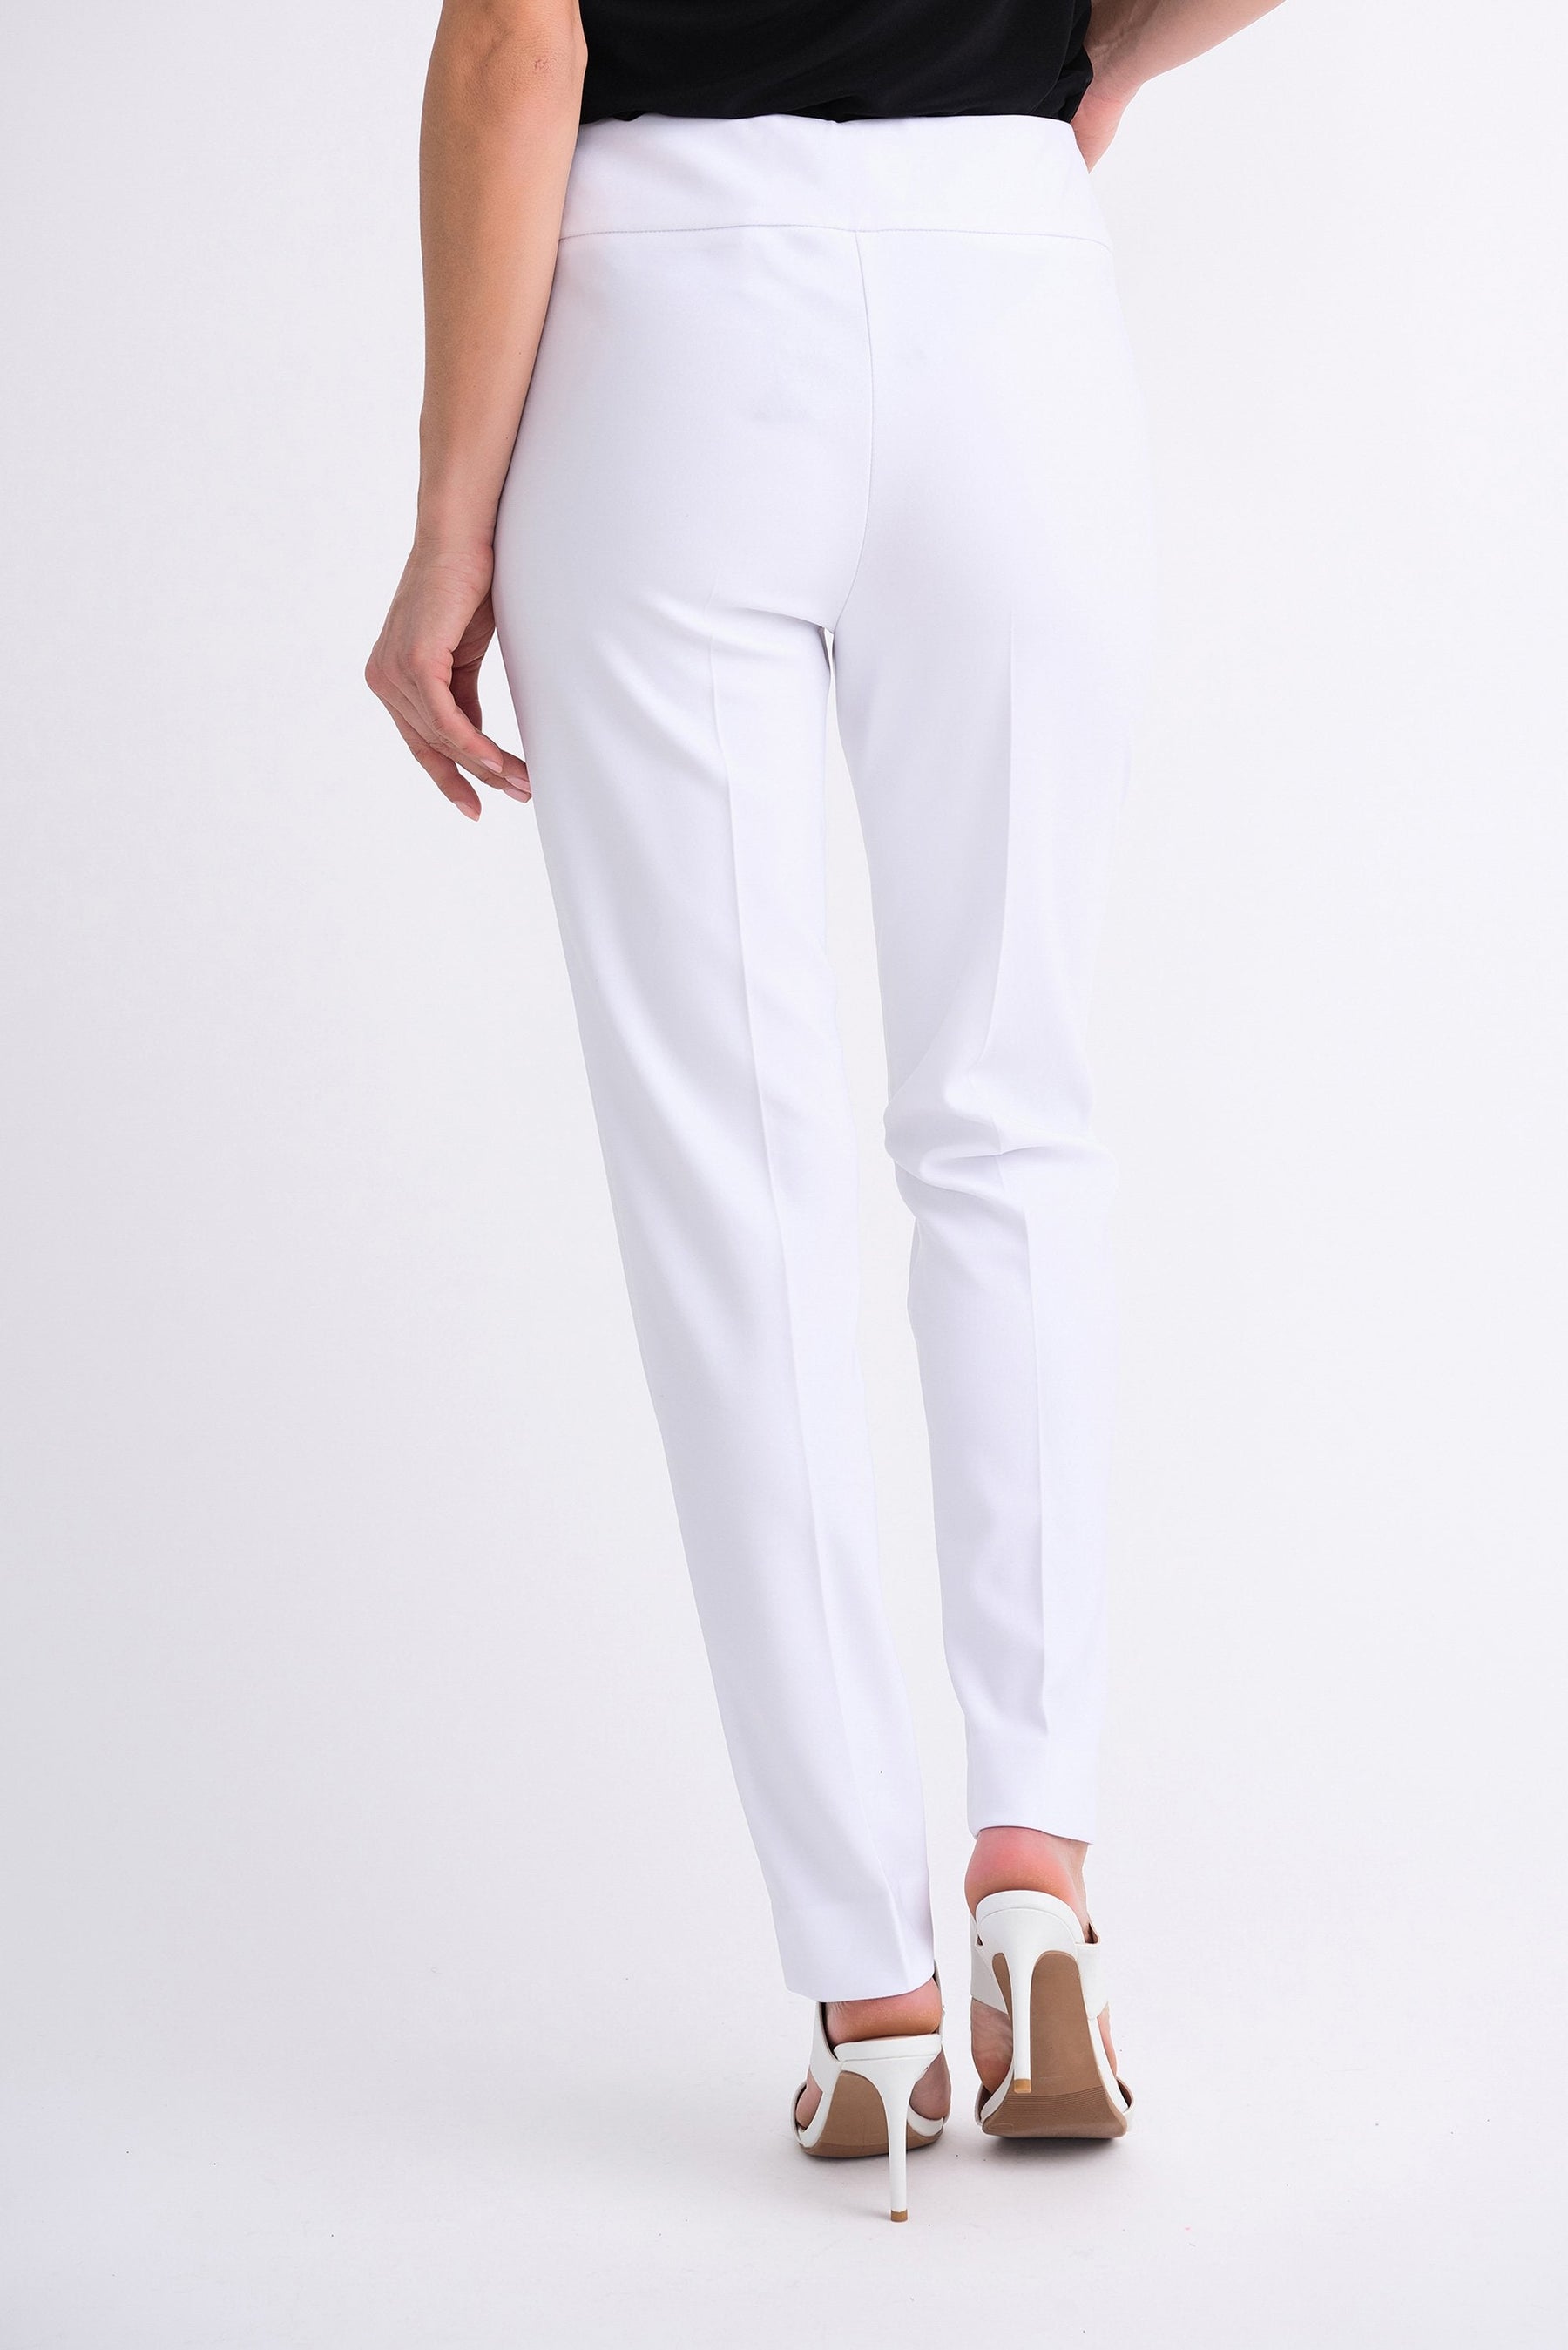 Pantalon Joseph Ribkoff - 144092J white